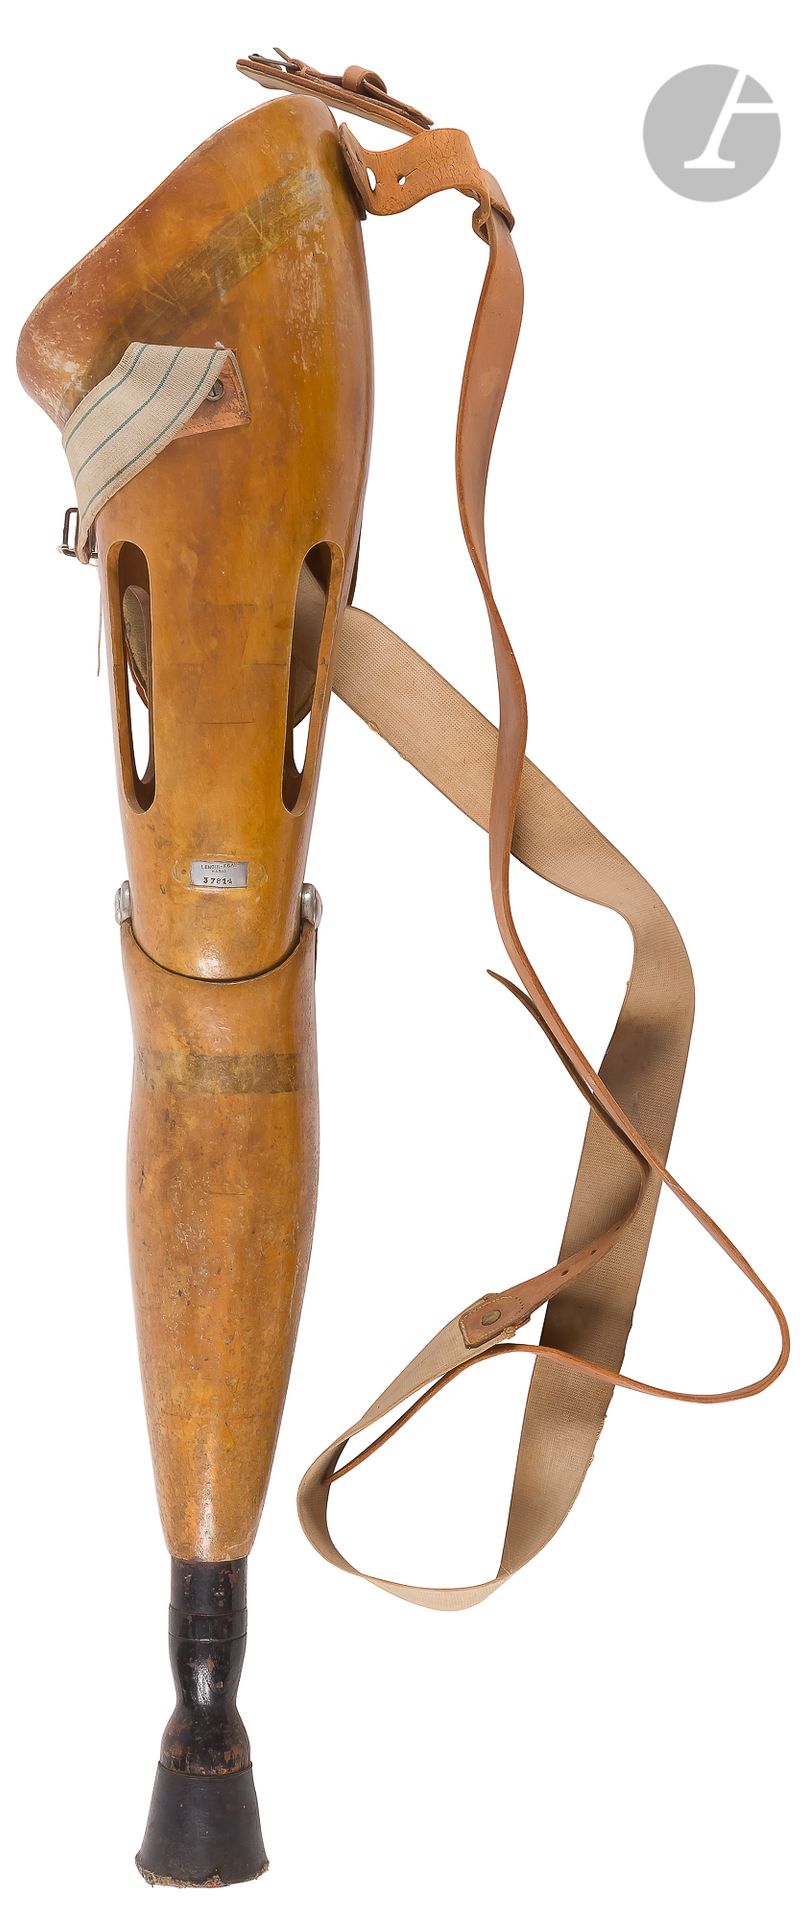 Null Protesi di gamba "Ortho Unic"
in legno leggero, ferro e gomma. 
Raccordi ni&hellip;